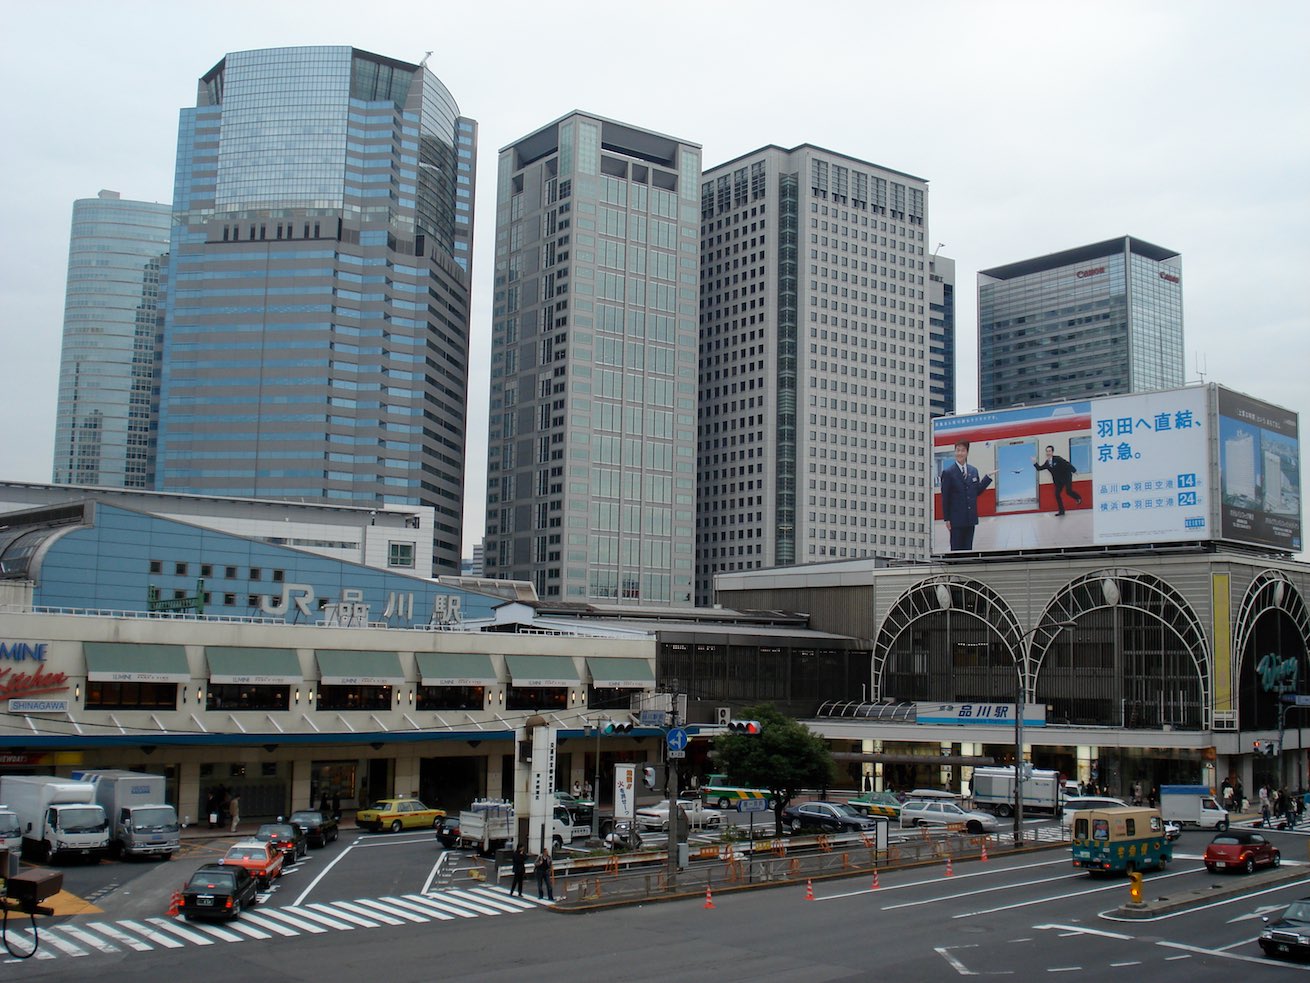 Tokyo Shinagawa